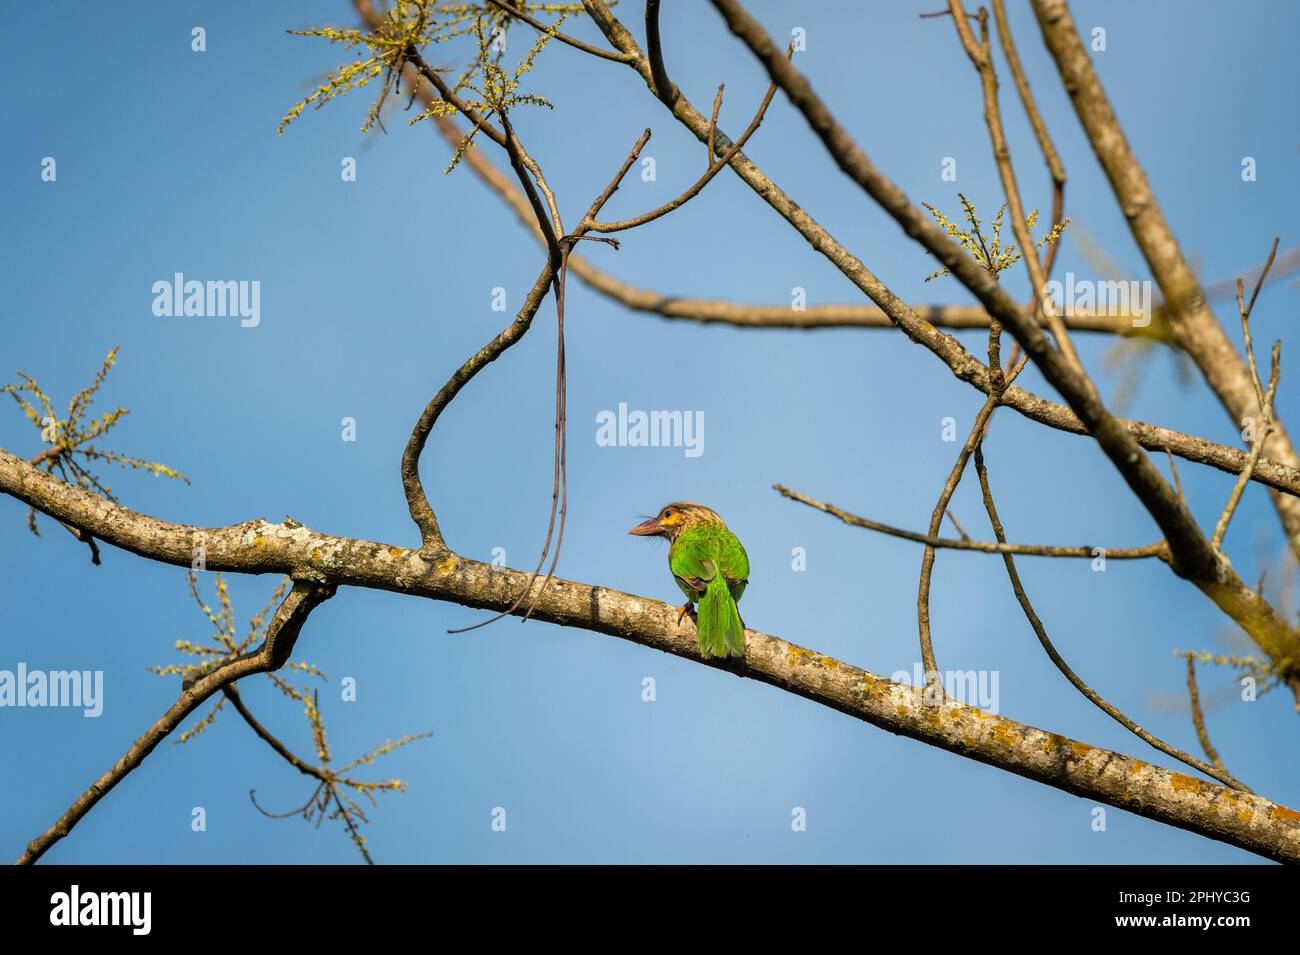 Braunköpfiger Barbet oder asiatischer Barbet oder Psilopogon zeylanicus-Vogel hoch oben am natürlichen blauen Himmel terai-Wald pilibhit-Nationalpark indien Stockfoto